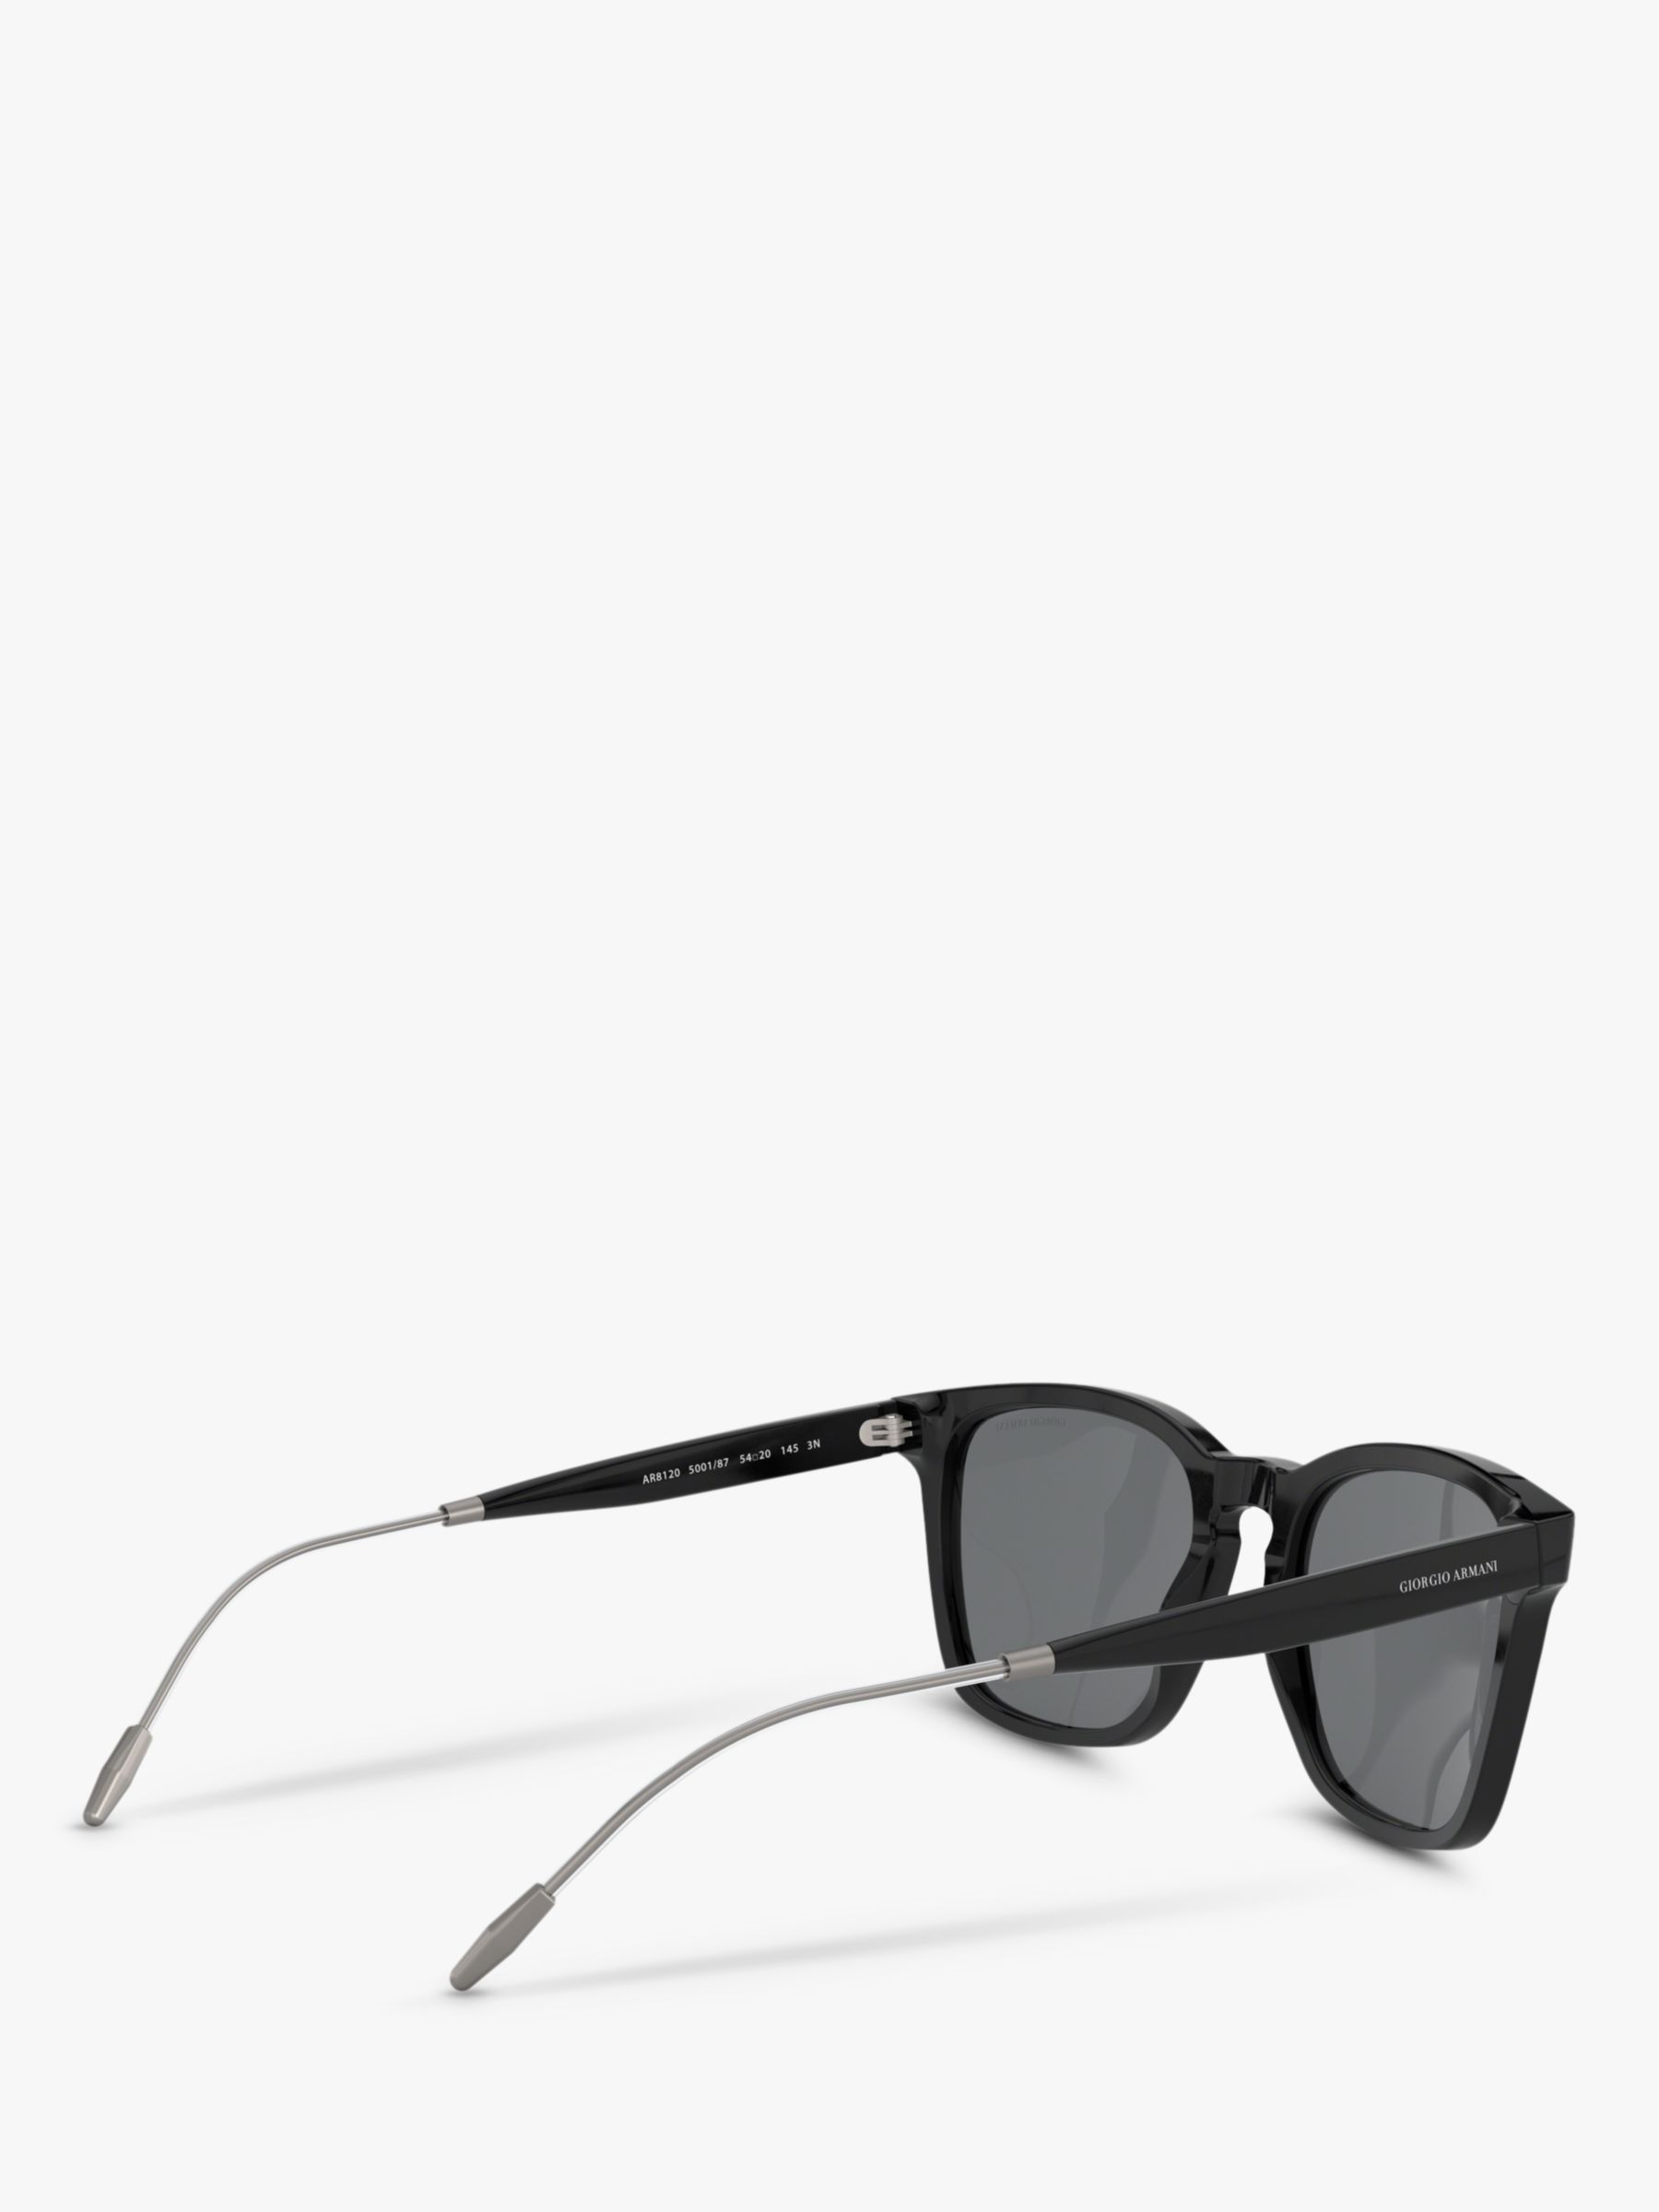 Giorgio Armani AR8120 Men's Square Sunglasses, Black/Grey